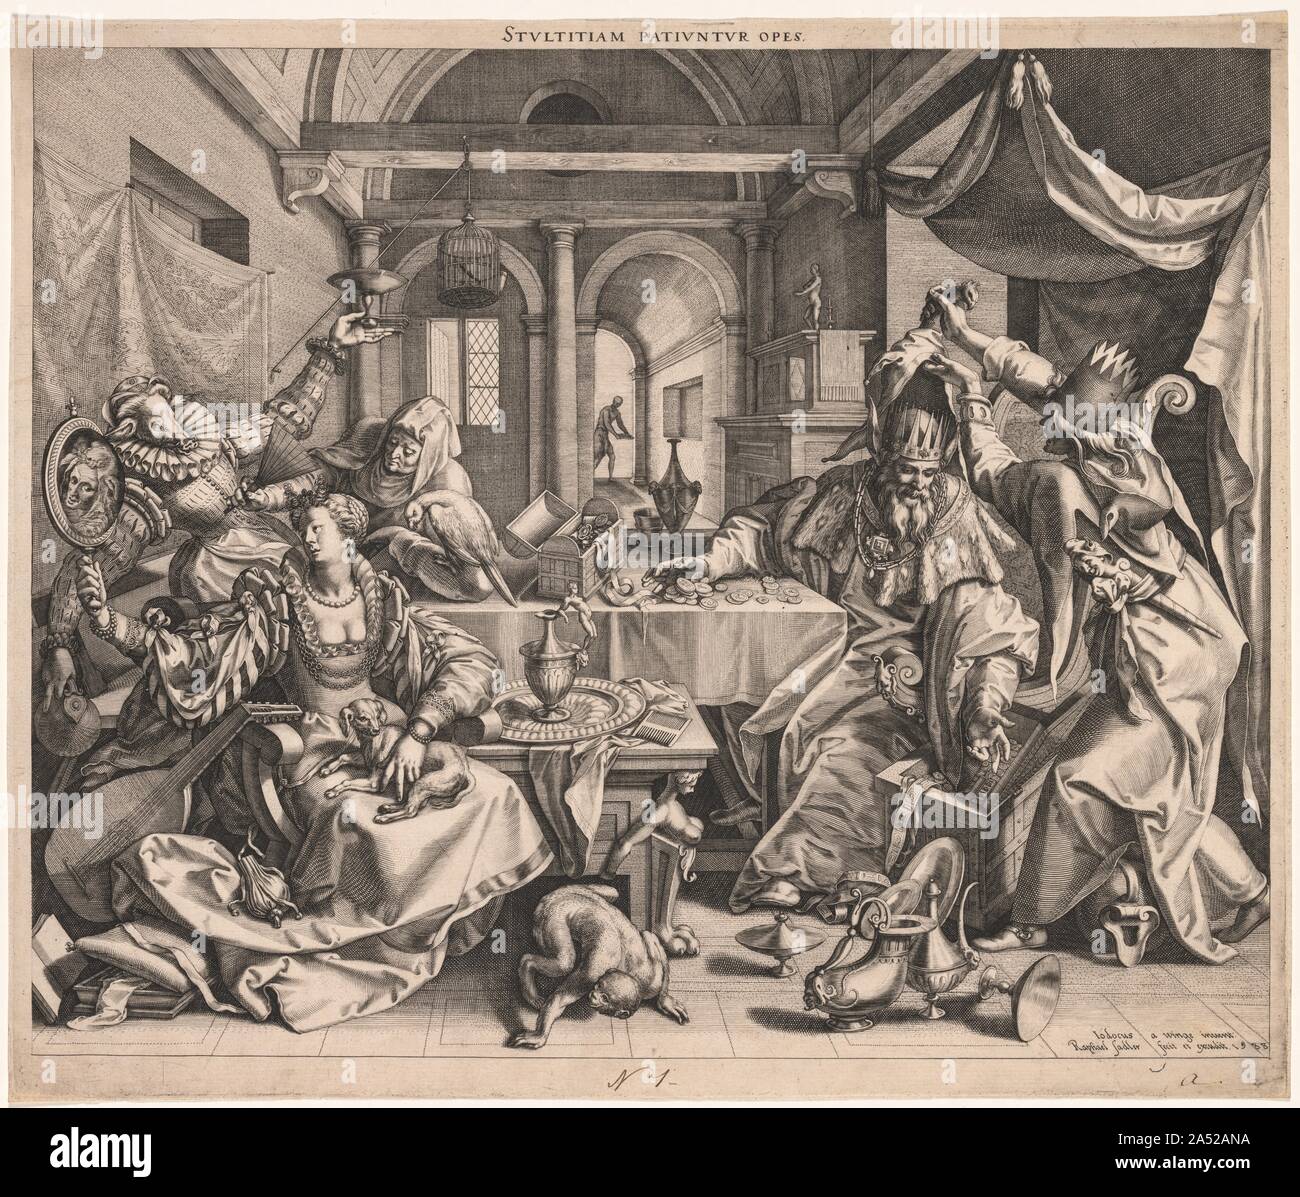 Stultitiam patiuntur opes (ricchezza permette la stupidità) o, allegoria della ricchezza, la lussuria, e stupidità, 1588. Foto Stock